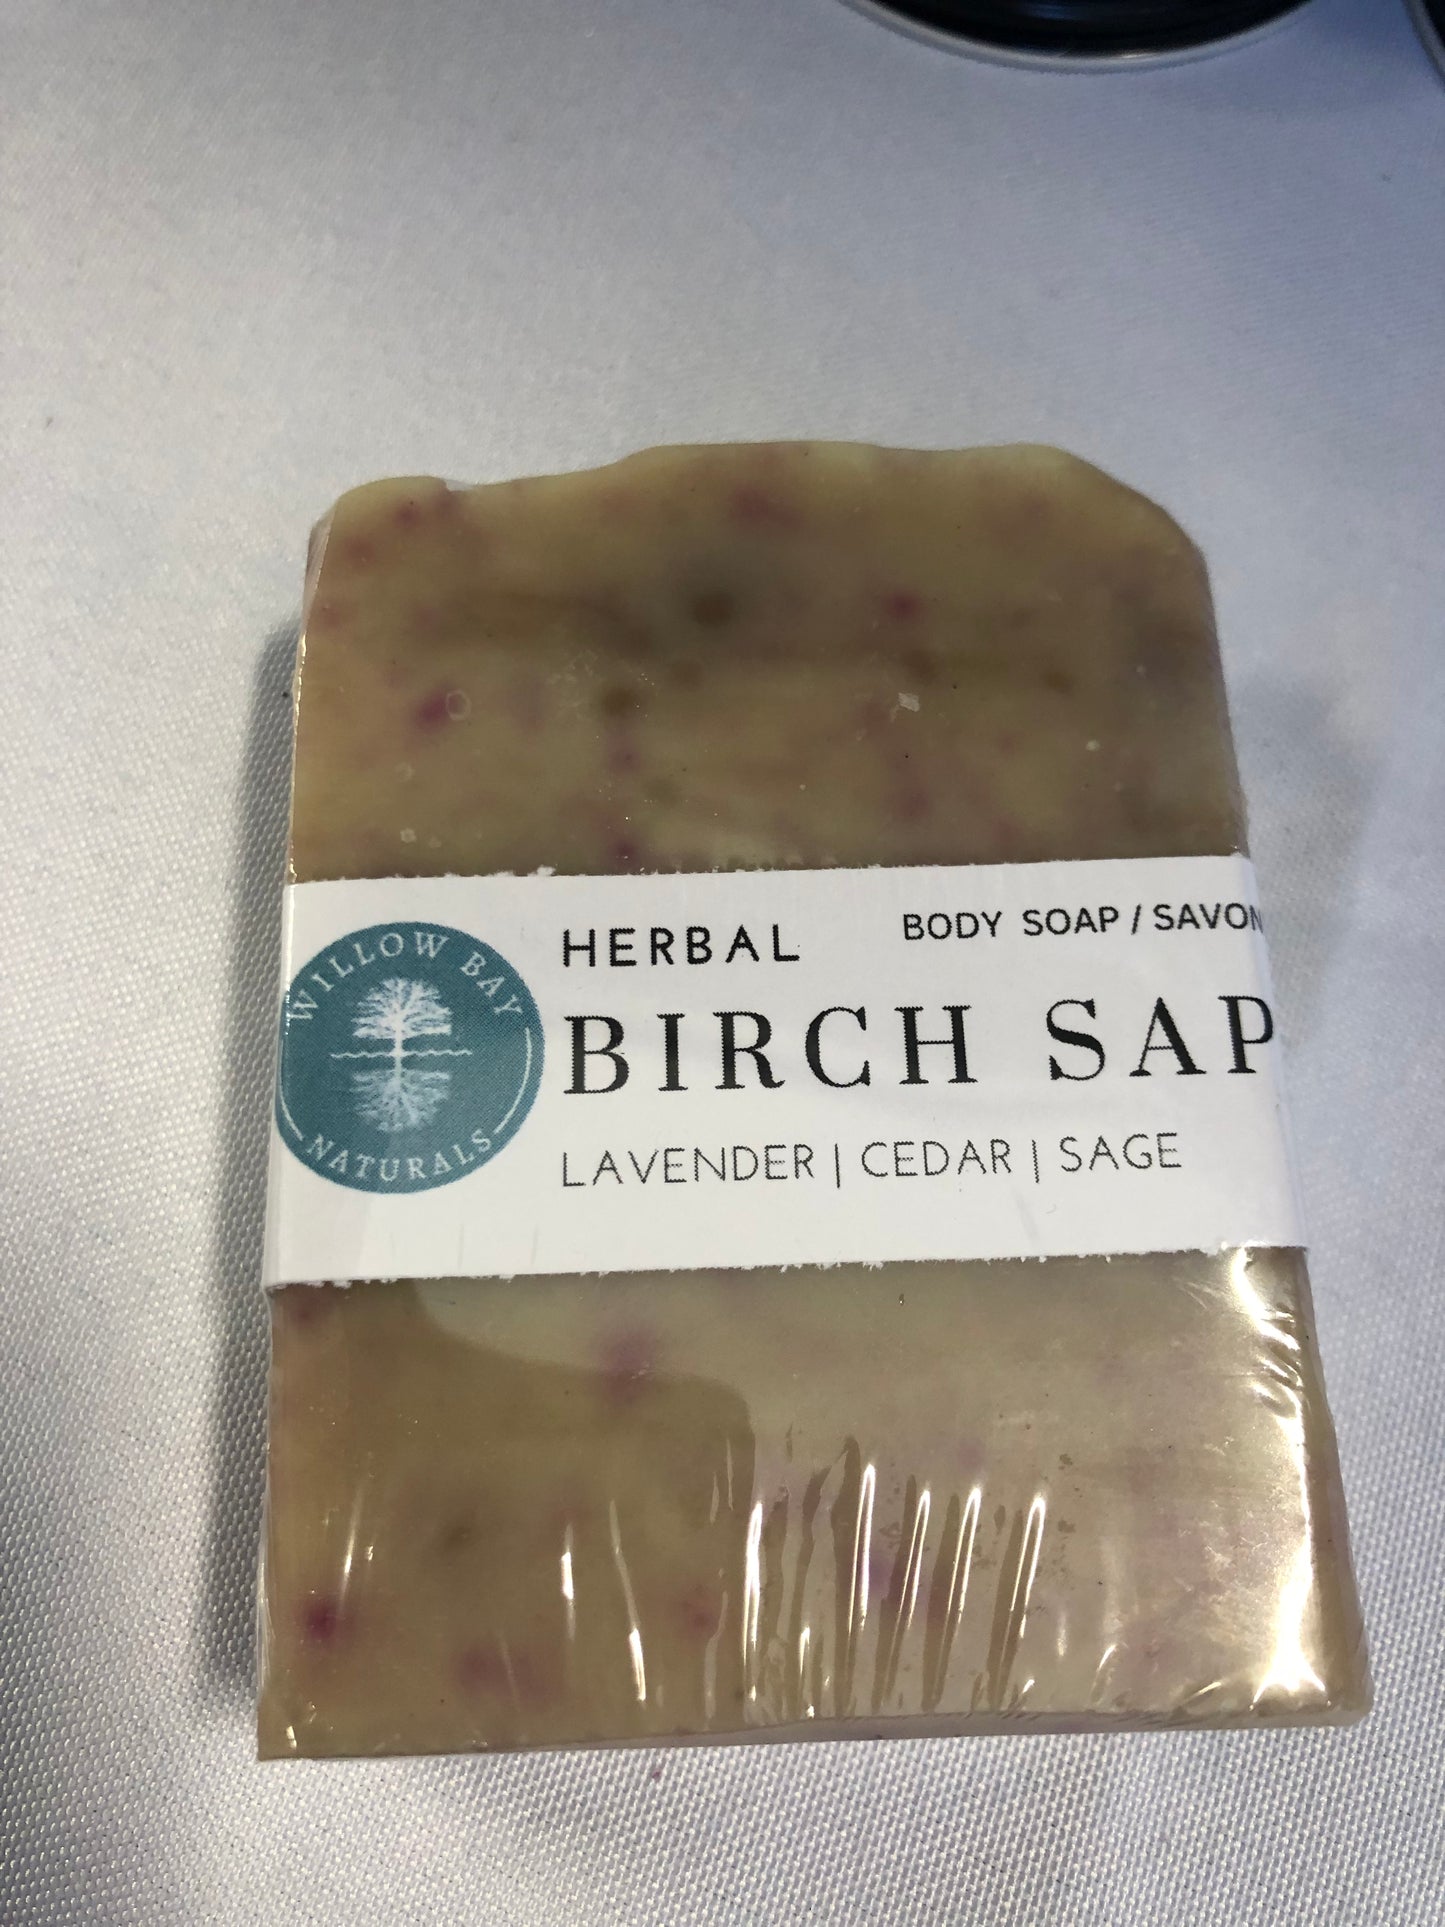 Birch Sap Soap